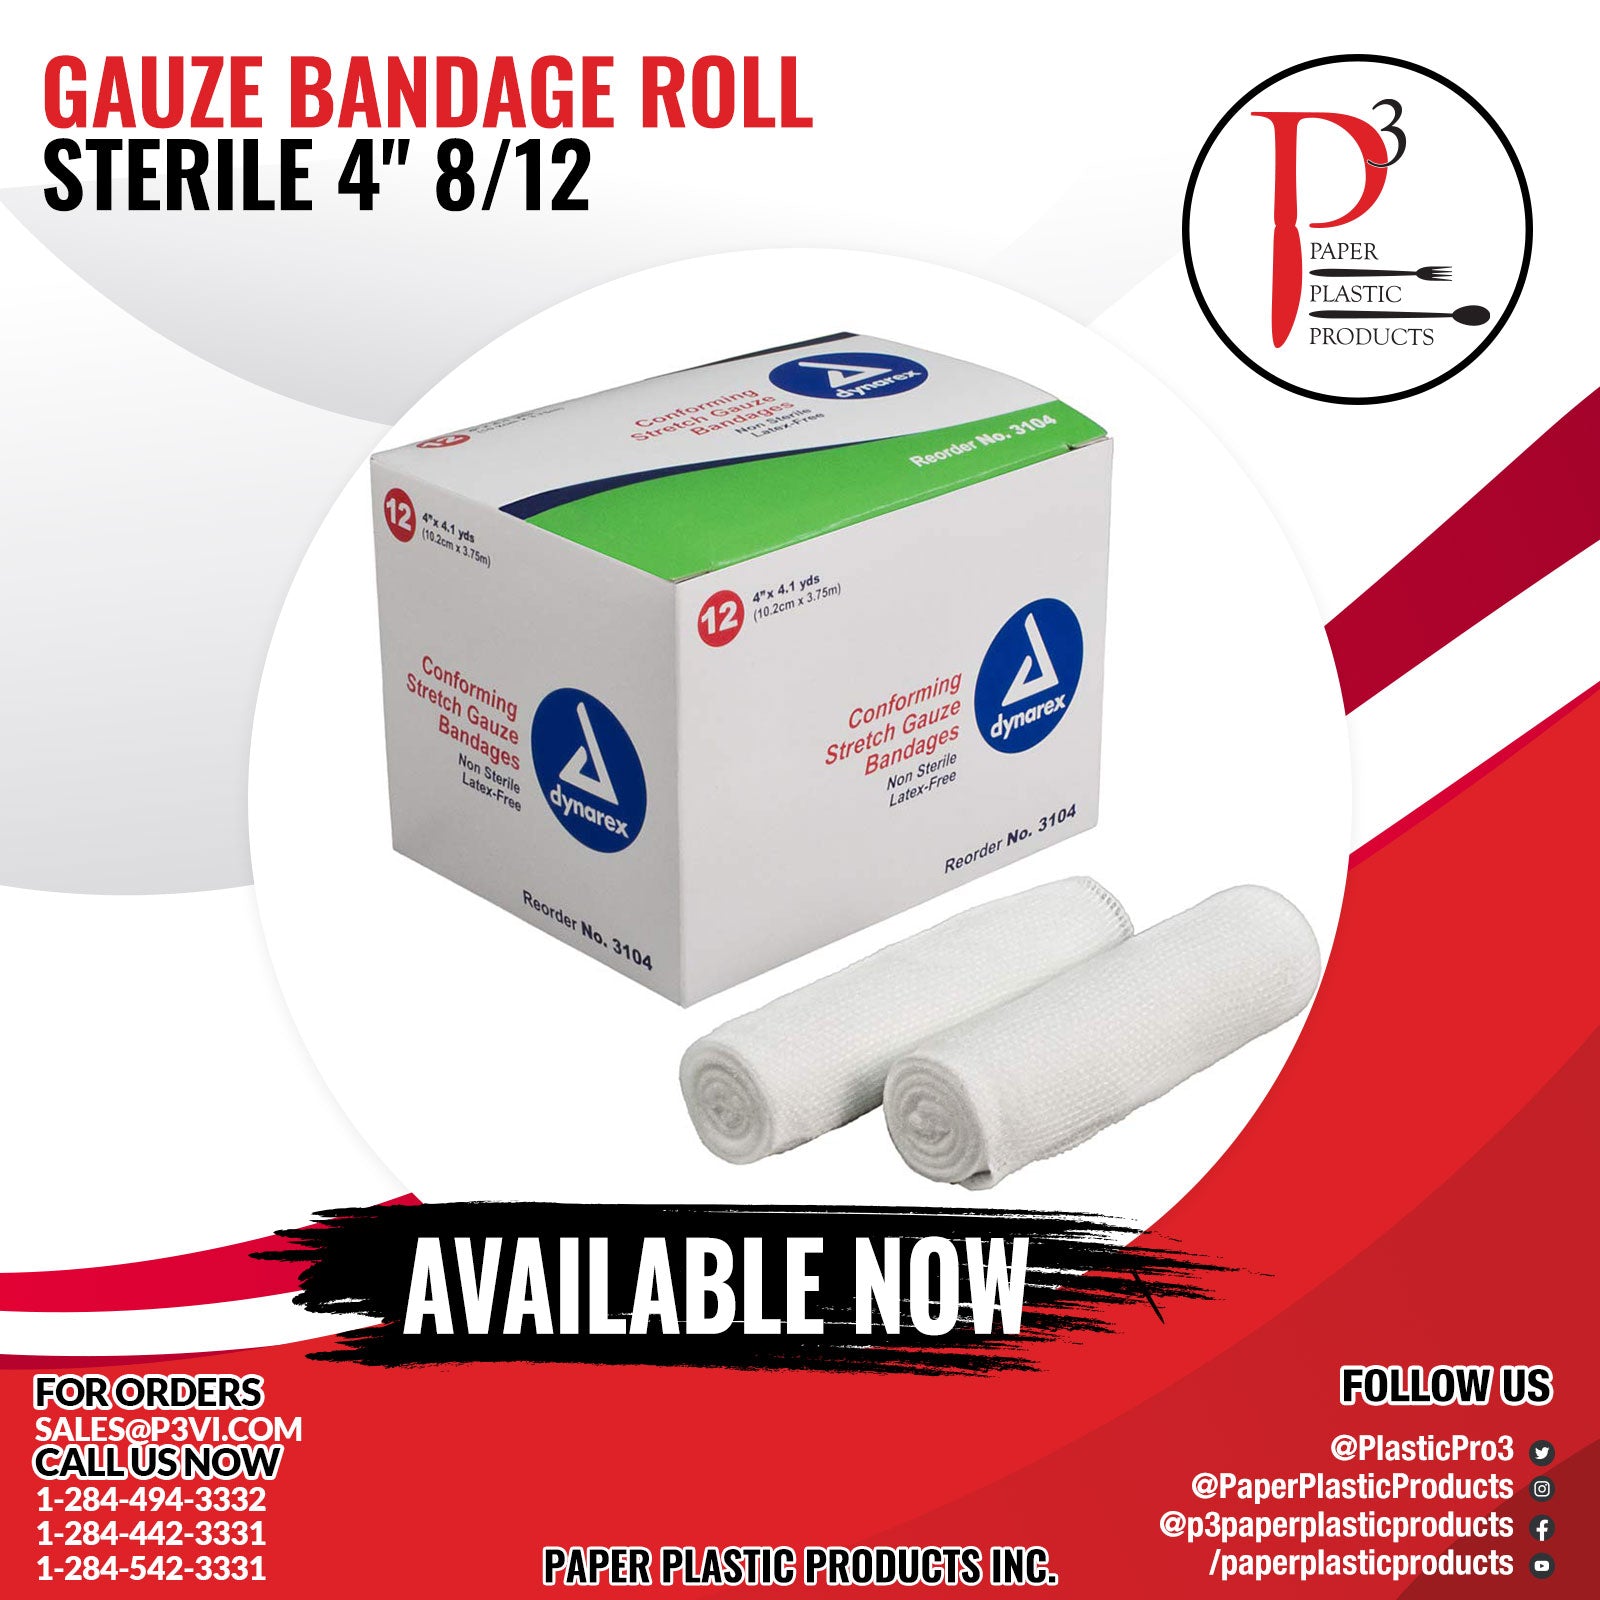 Gauze Bandage Roll Sterile 4" 8/12